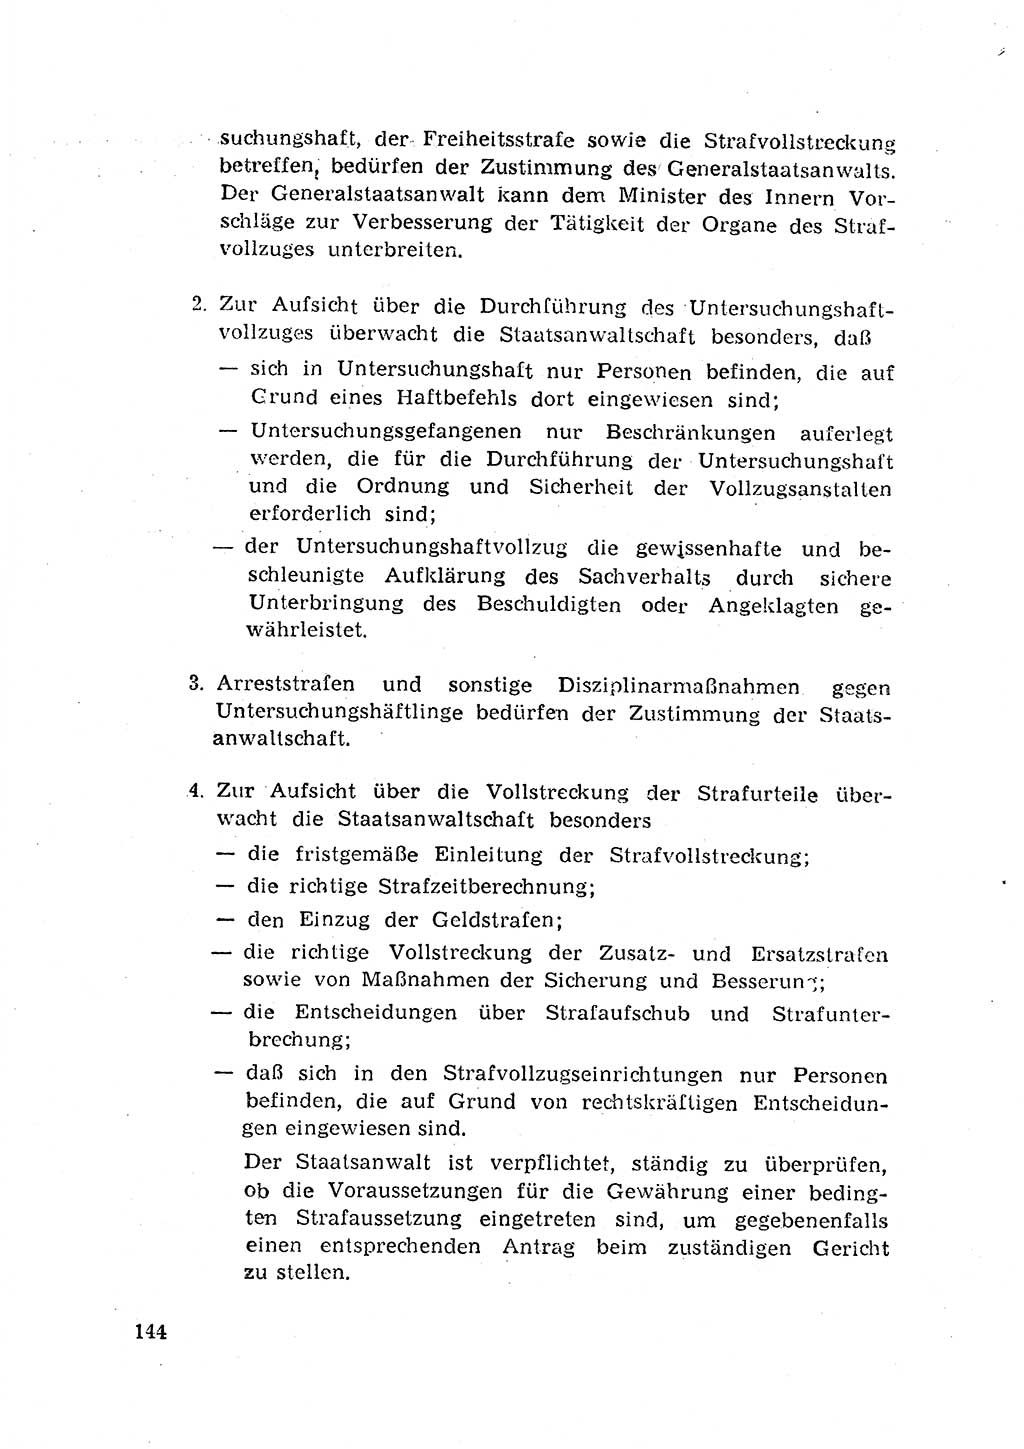 Rechtspflegeerlaß [Deutsche Demokratische Republik (DDR)] 1963, Seite 144 (R.-Pfl.-Erl. DDR 1963, S. 144)